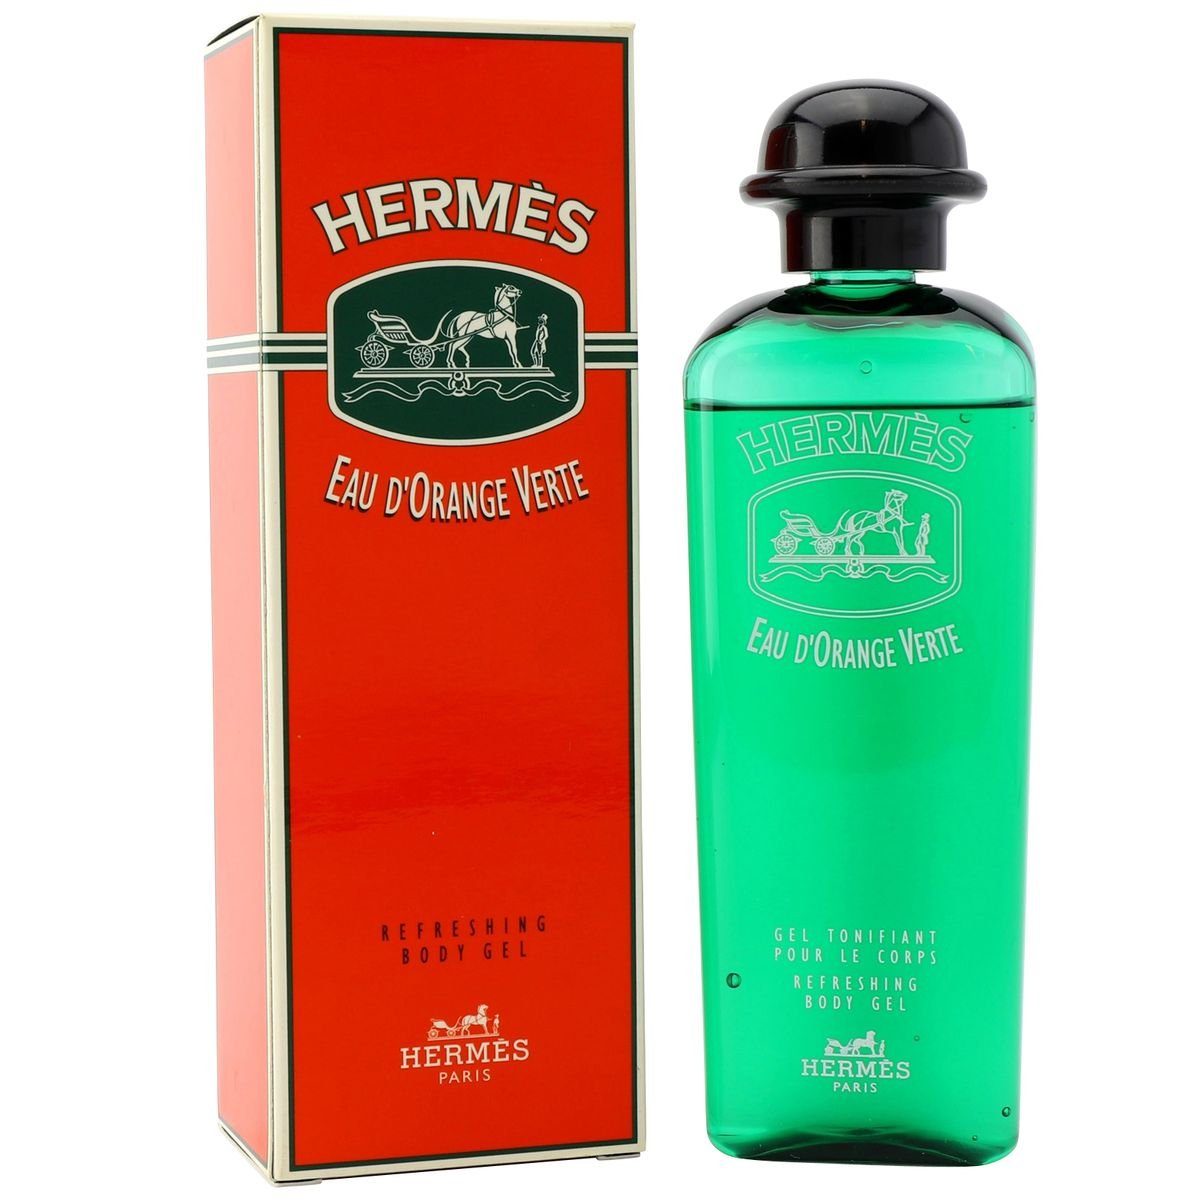 HERMÈS Körpergel Hermes Eau d'Orange Verte Körpergel / Body Gel 200 ml old Version